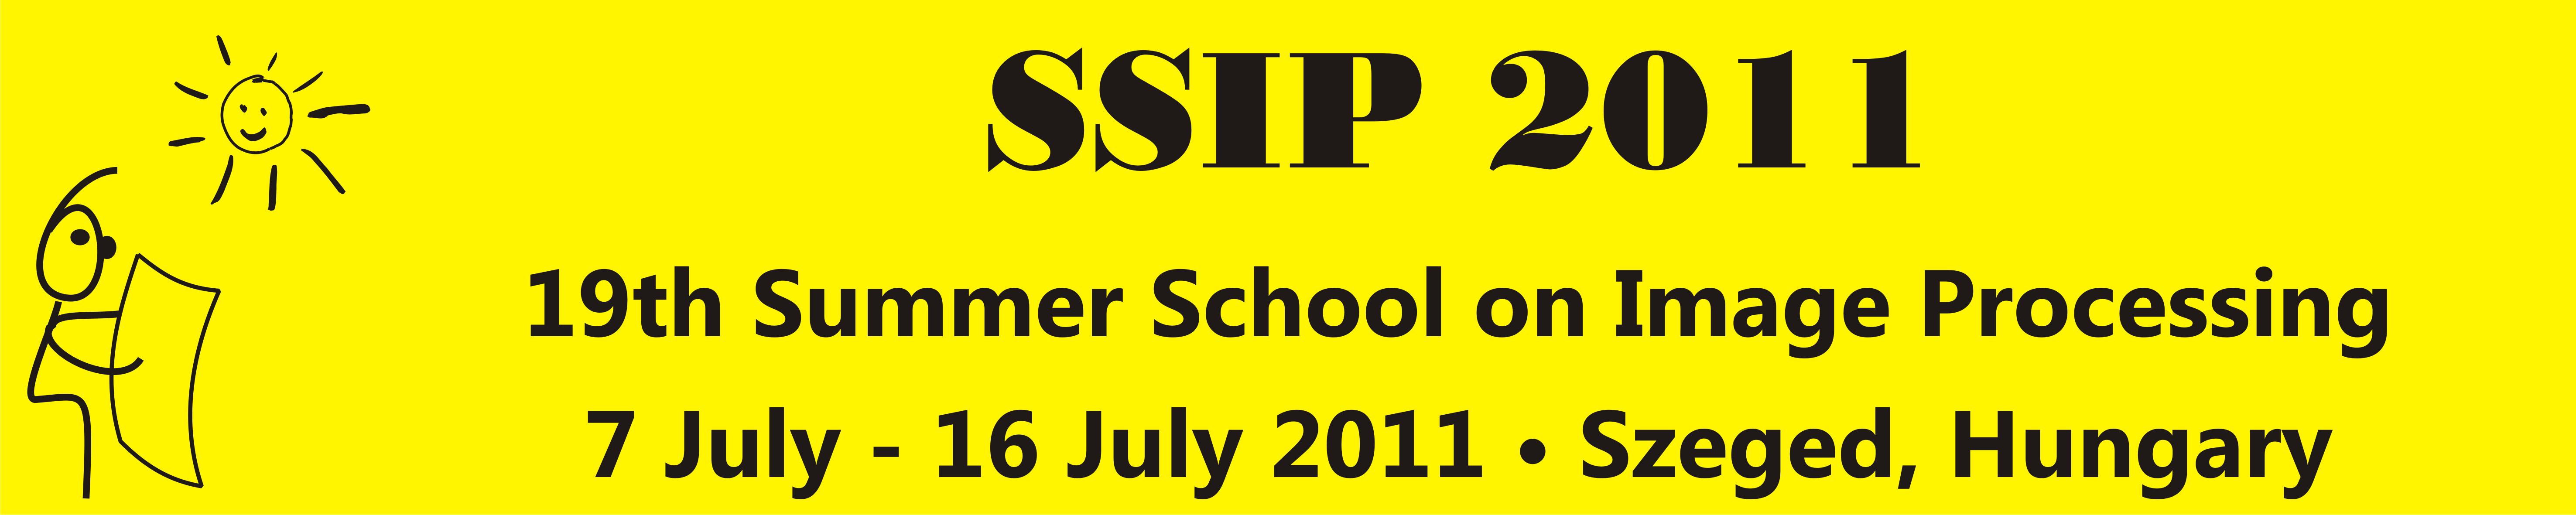 SSIP 2011 Logo